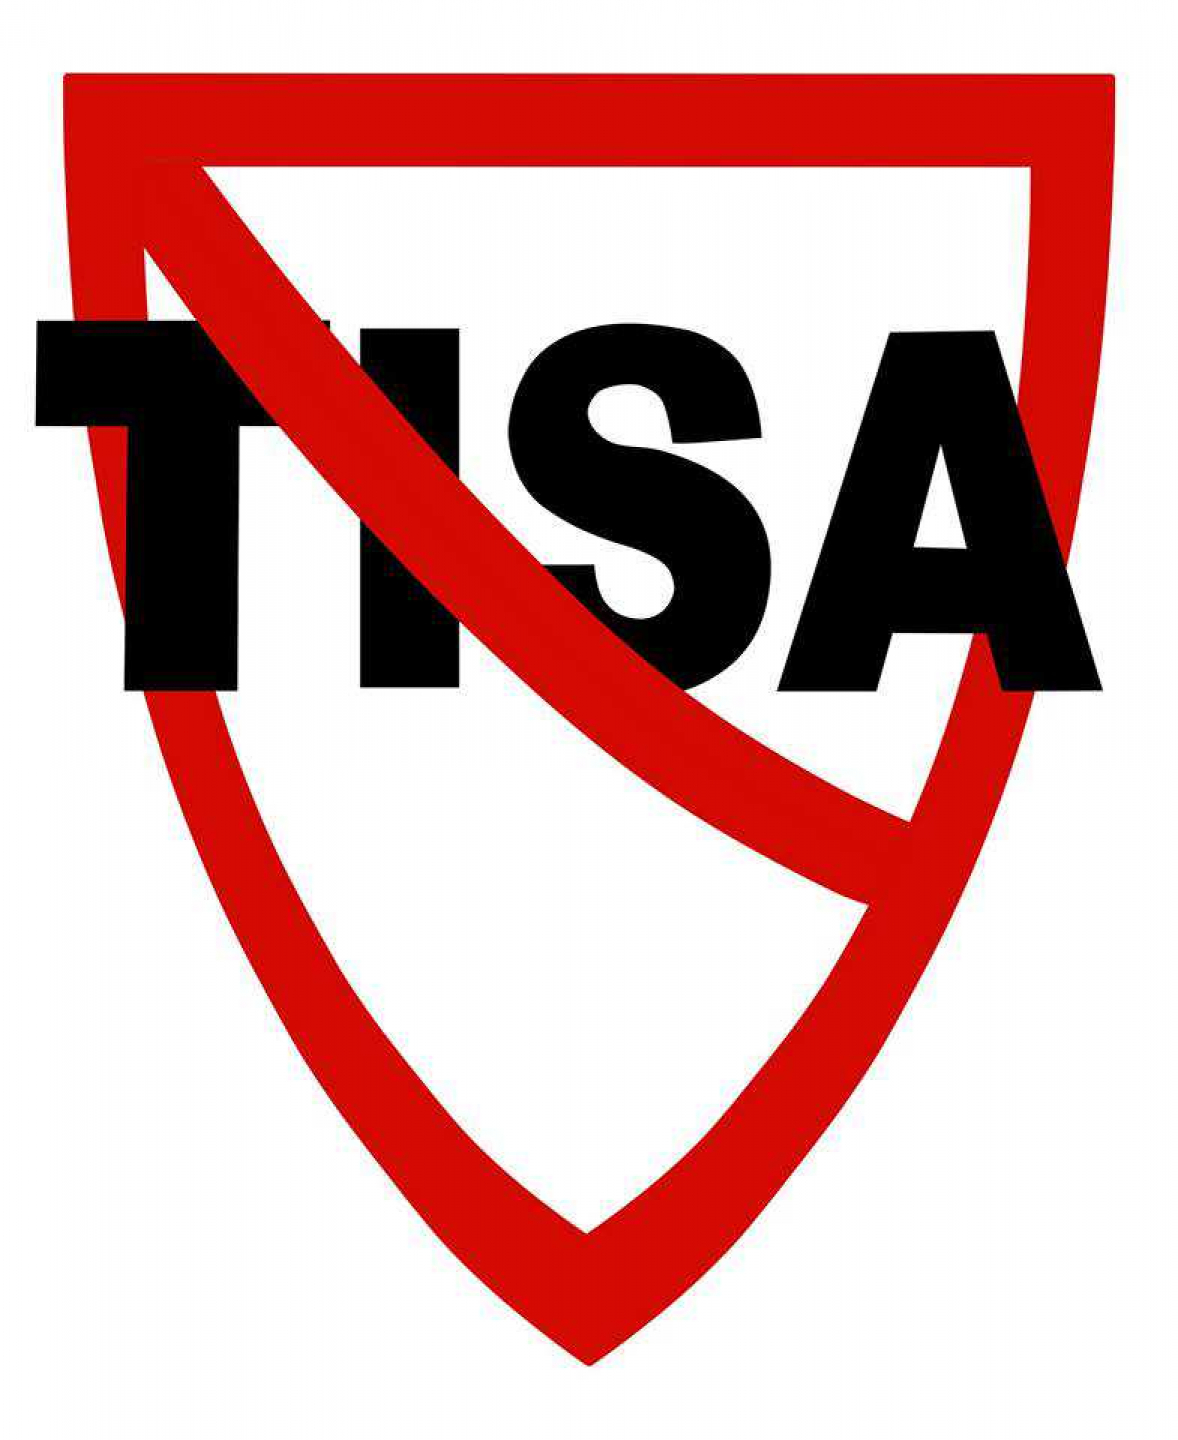 Kampanje for TISA-frie kommuner